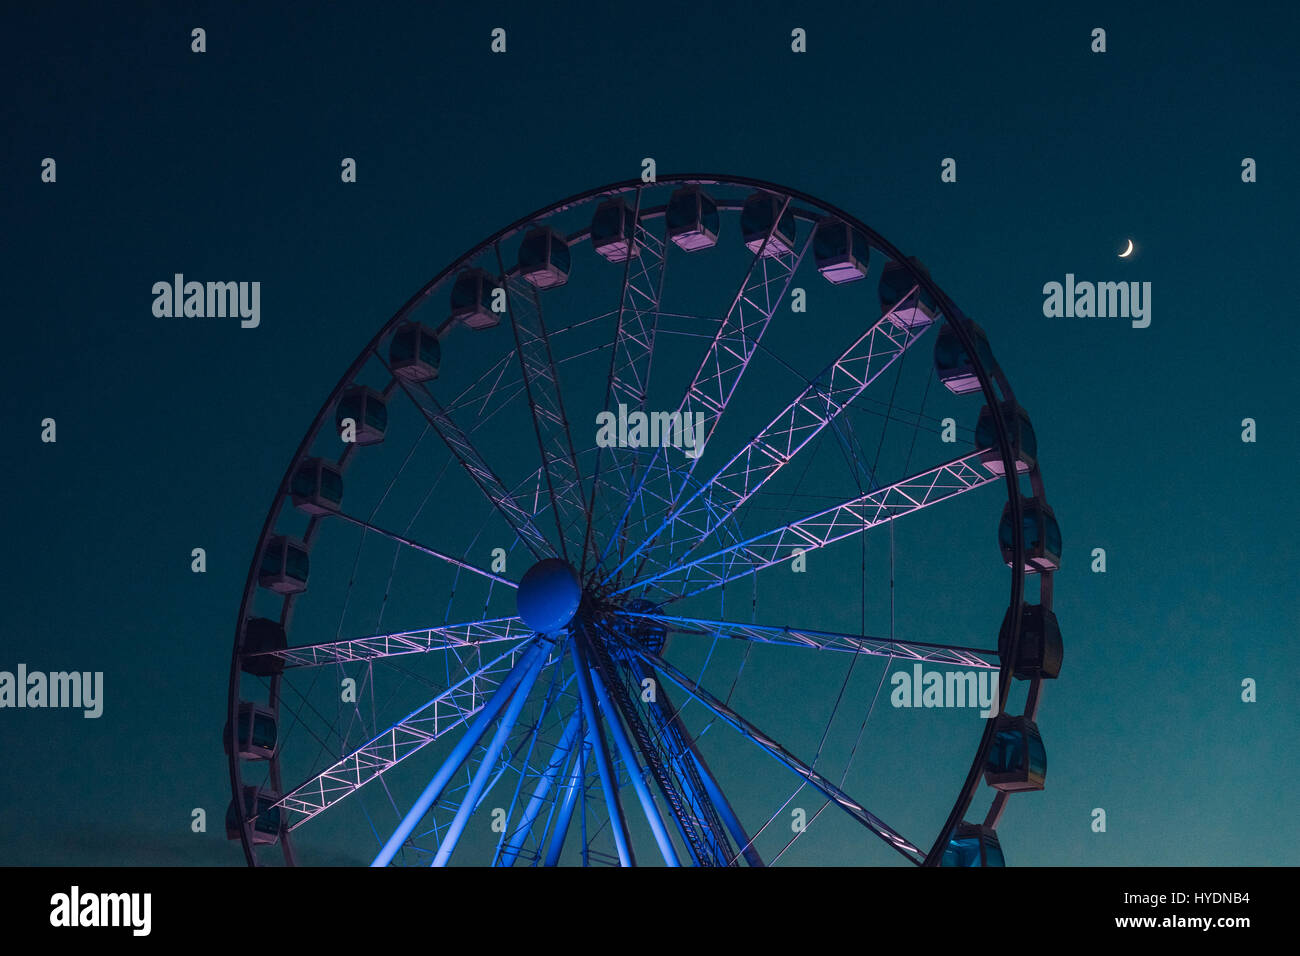 Inaktive Riesenrad vor dunklen Abendhimmel mit Halbmond Stockfoto